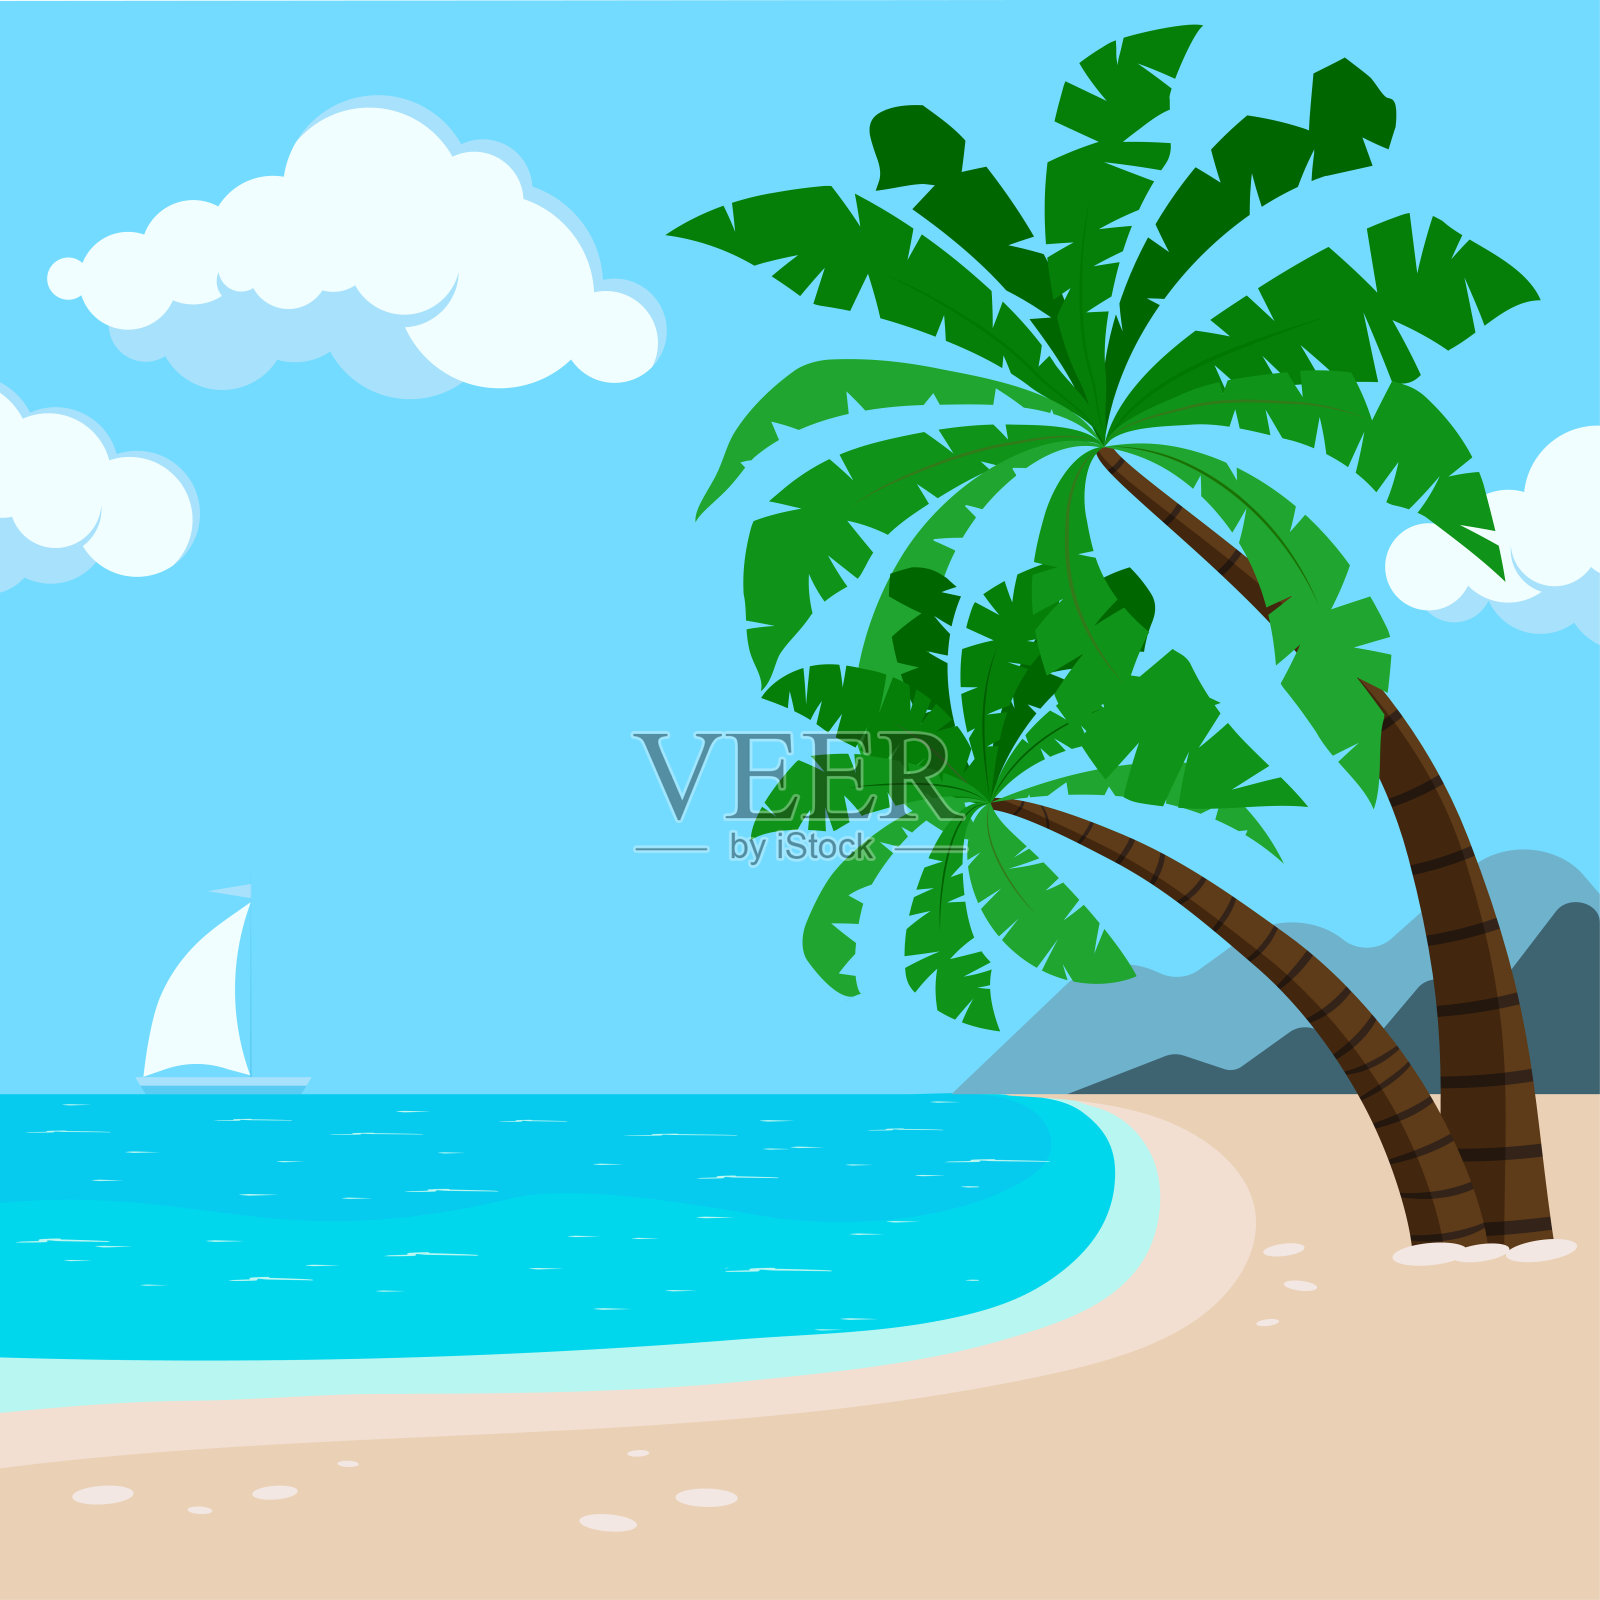 热带夏威夷海滩背景有棕榈树、大海、帆船。插画图片素材